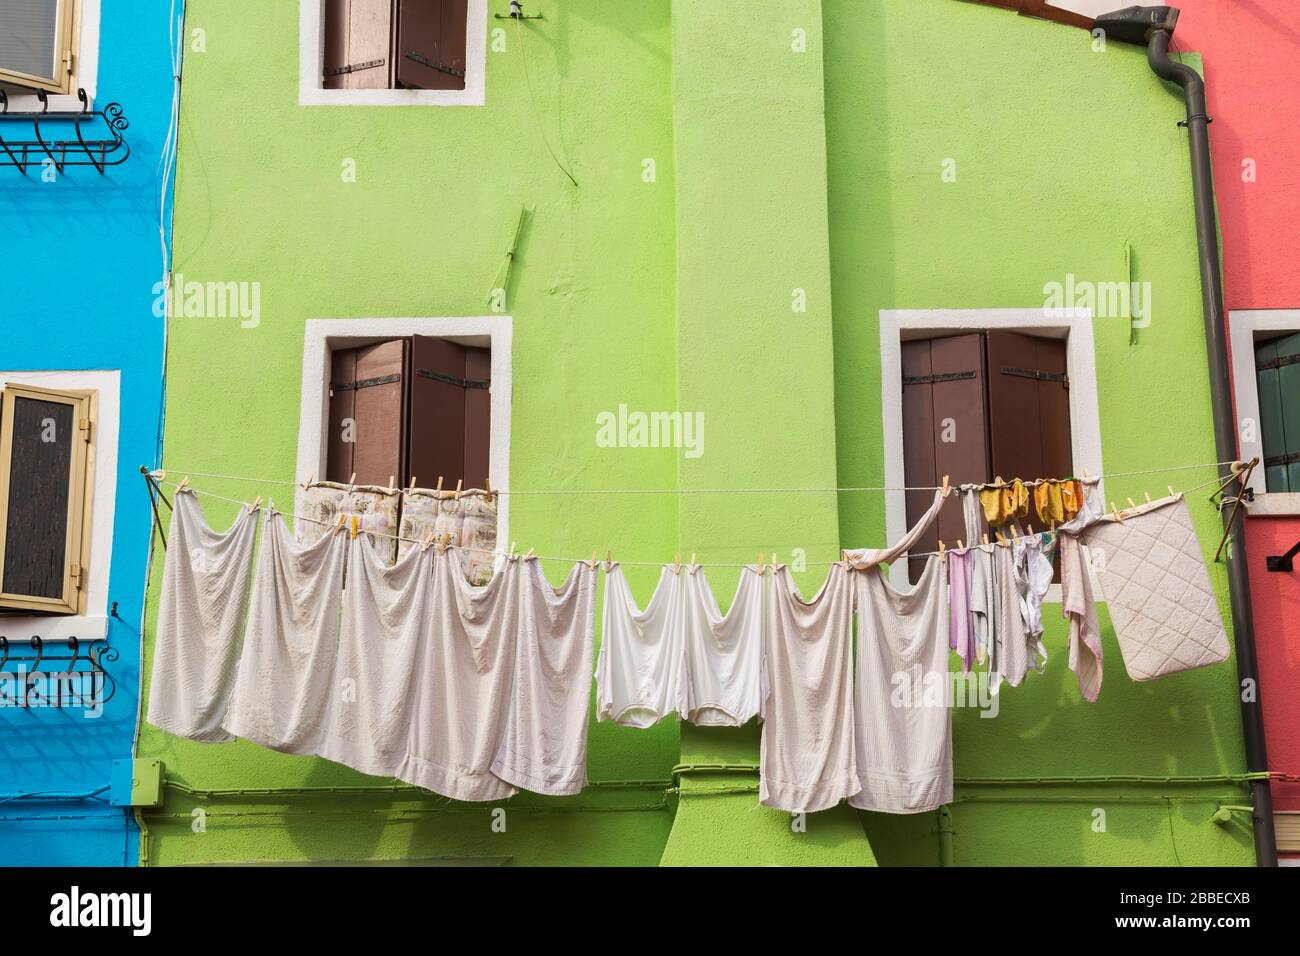 Fachada de la casa de estuco verde decorada con cortina sobre la puerta de entrada y ropa lavada en el tendedero, Isla Burano, Laguna veneciana, Venecia, Véneto, Italia Foto de stock